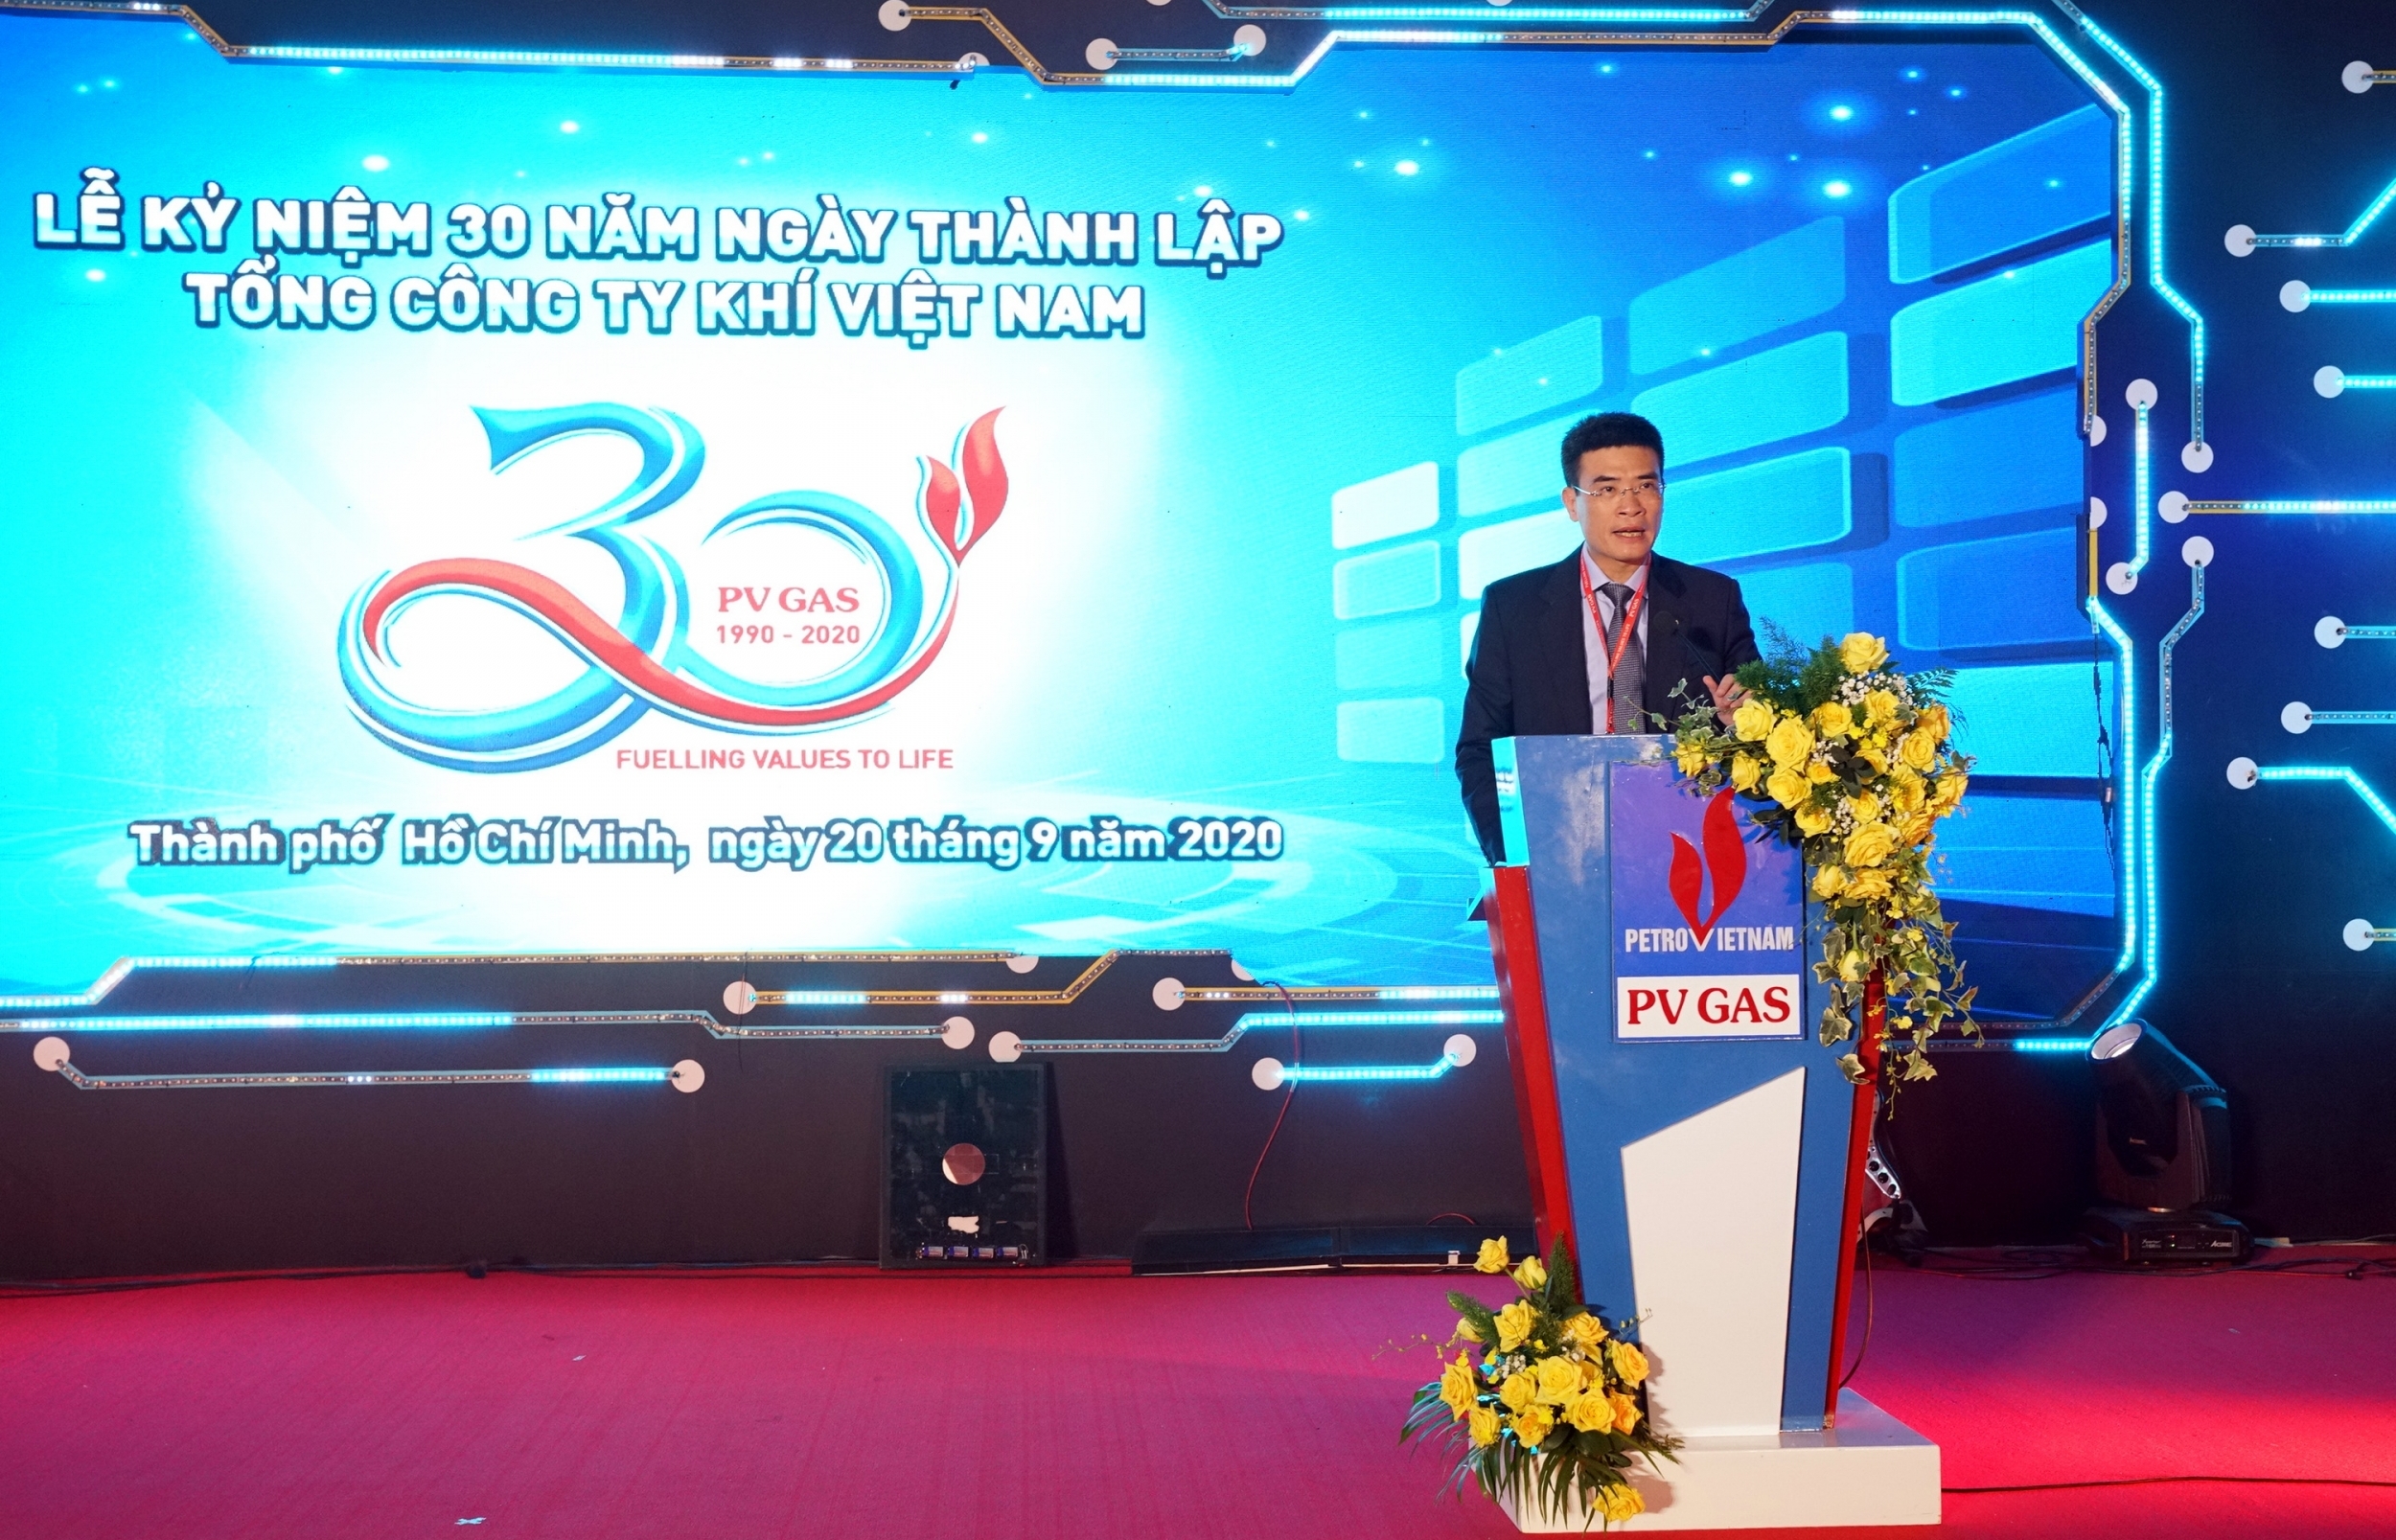 Tổng giám đốc PV GAS Dương Mạnh Sơn chào mừng và kêu gọi tinh thần người lao động